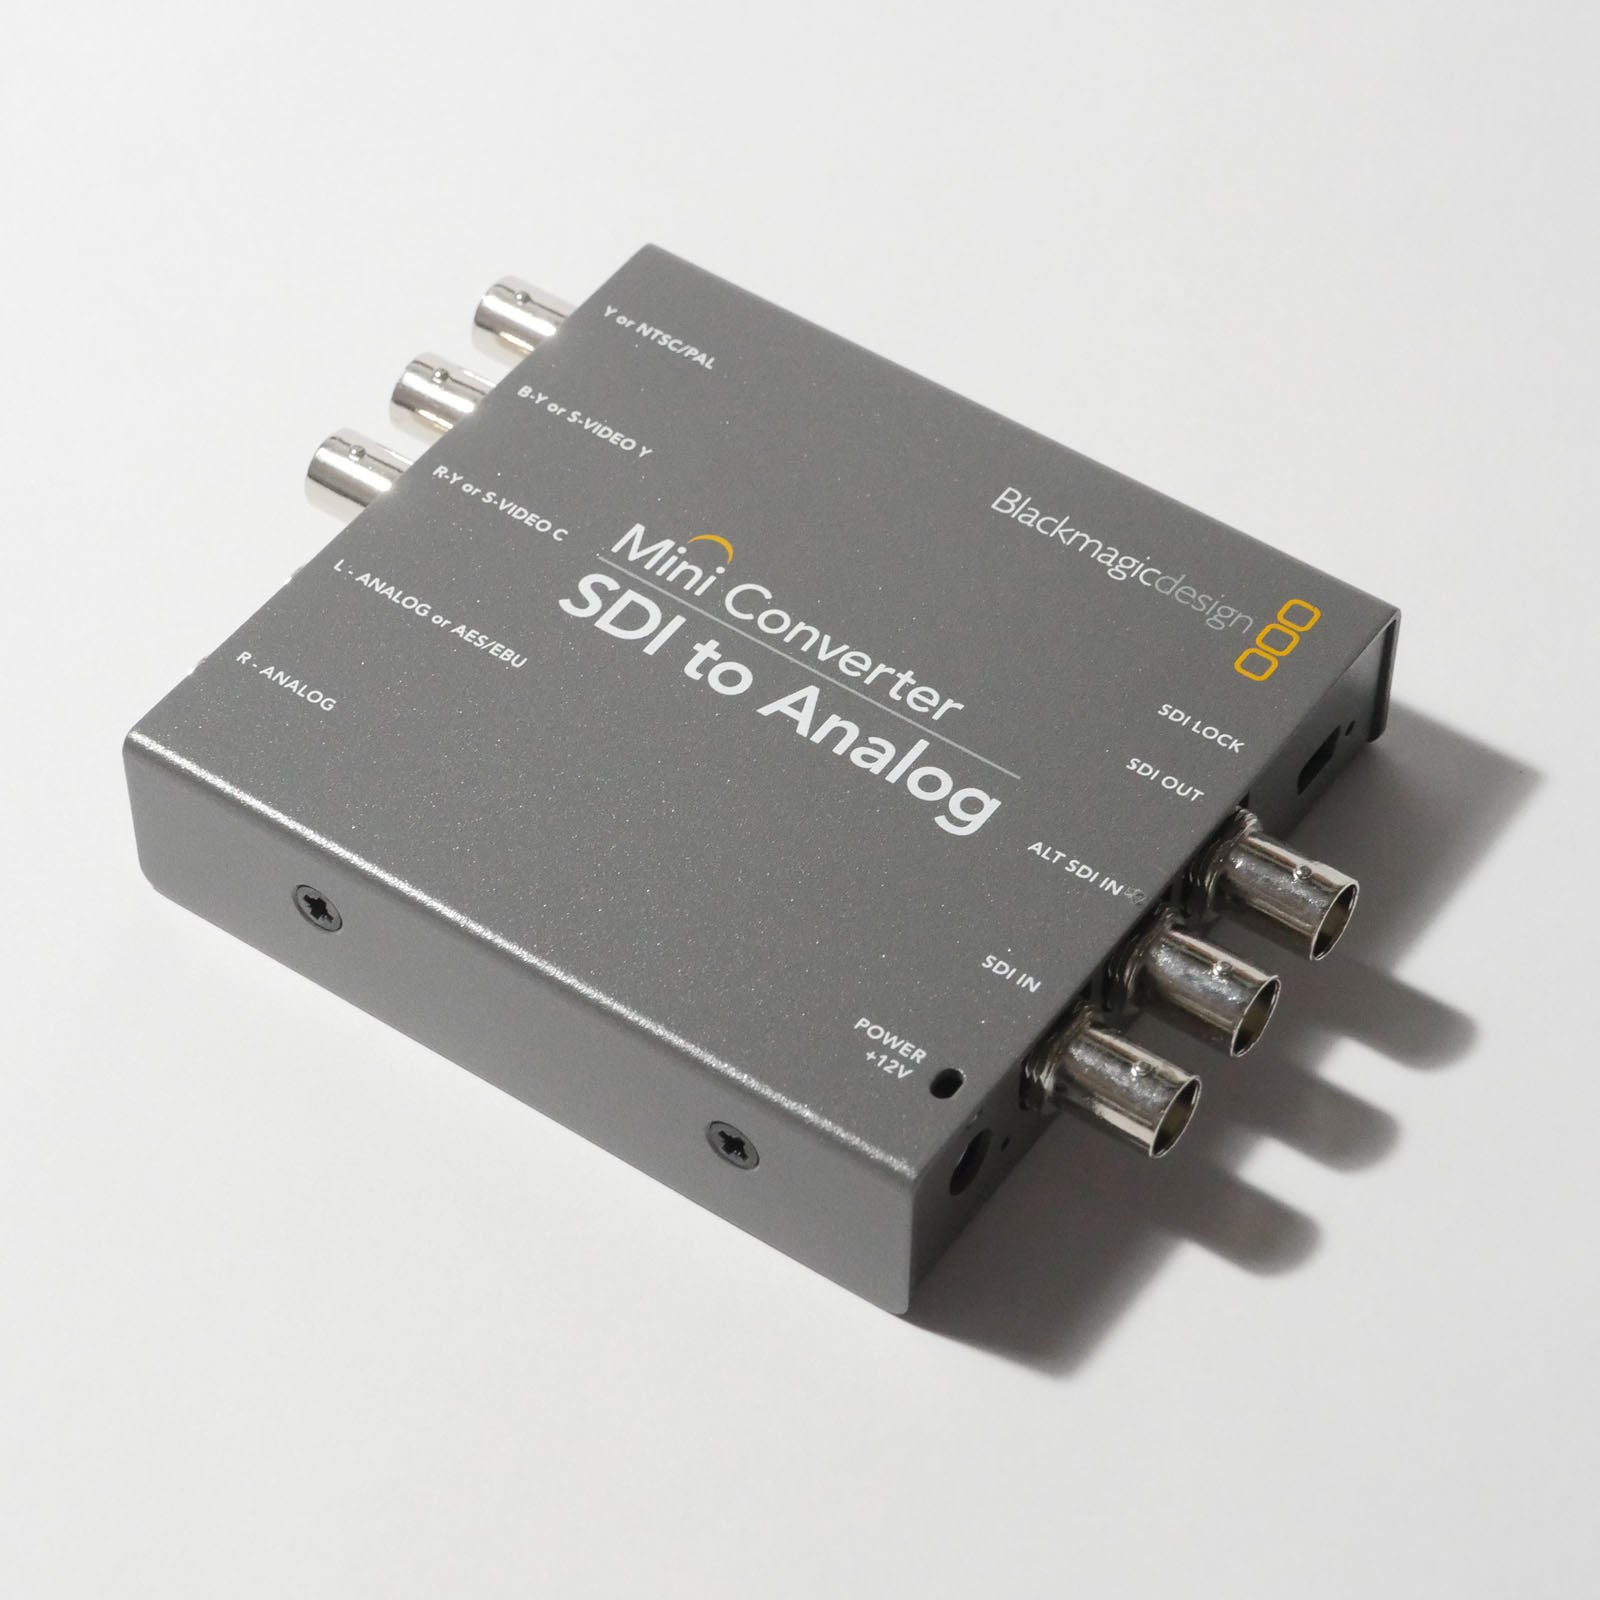 ブラックマジックデザイン コンバーター Micro Converter SDI to HDMI 3G